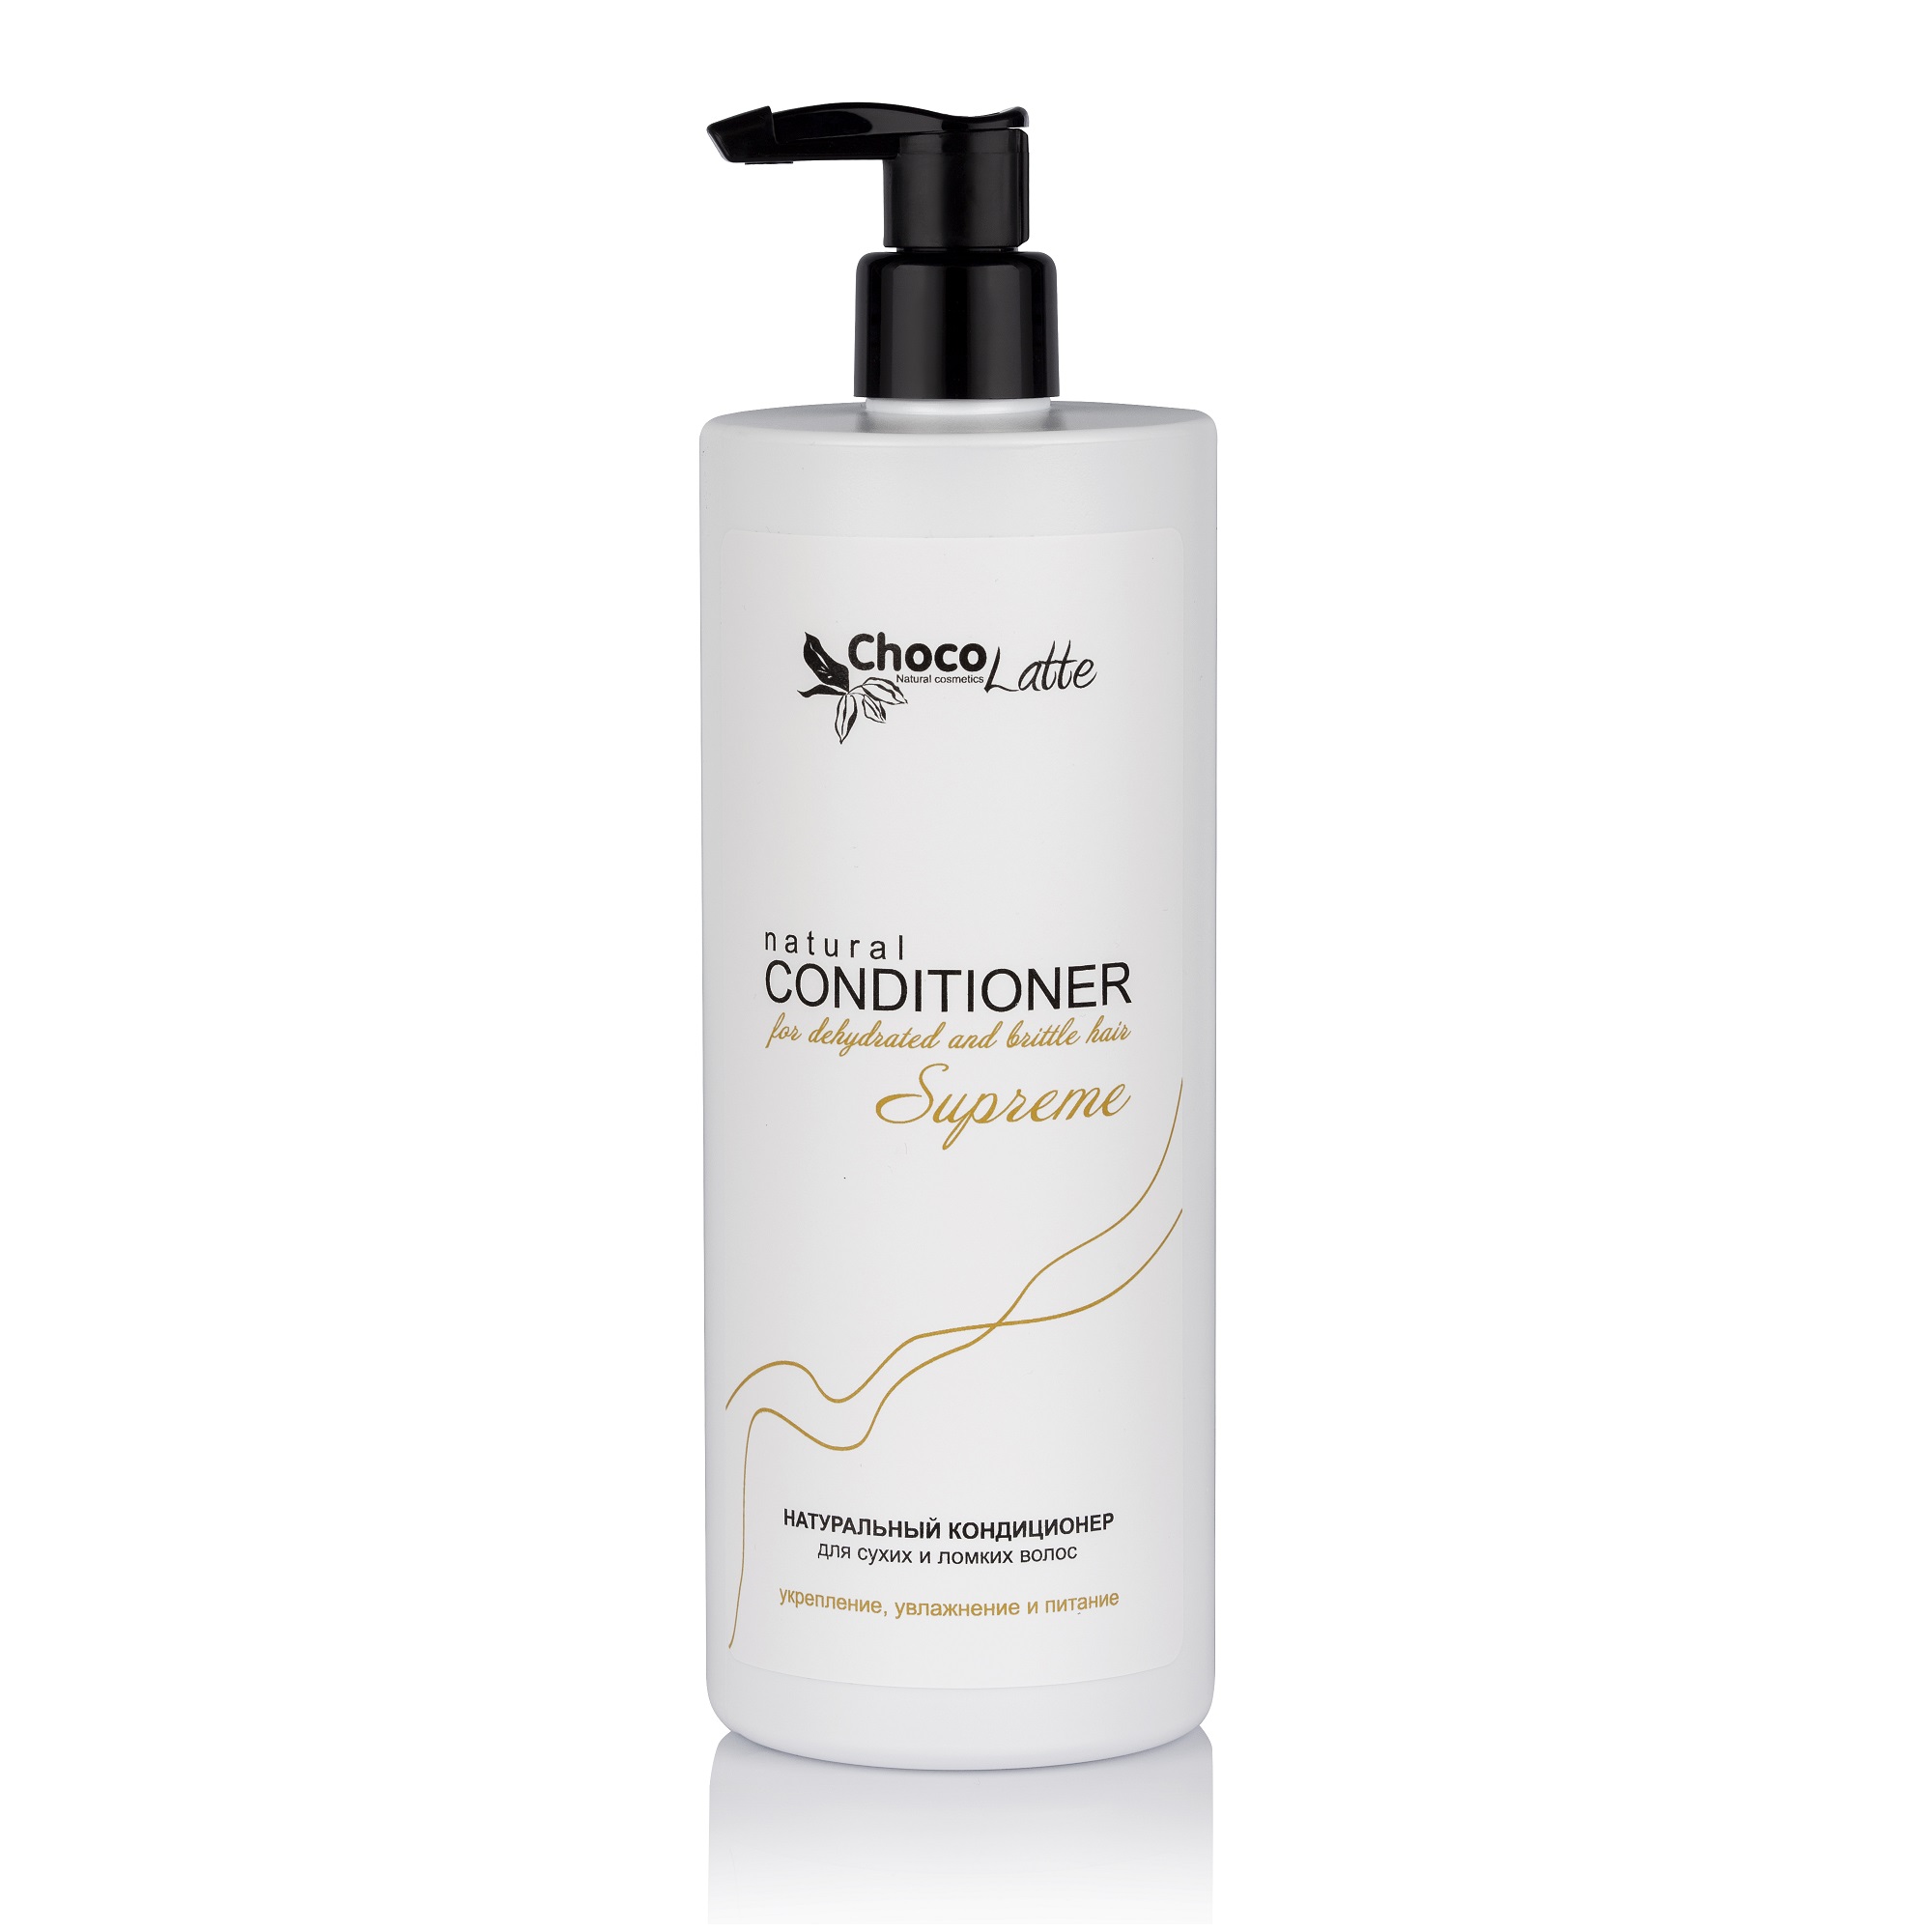 Кондиционер SUPREME натуральный для сухих и ломких волос, укрепление, увлажнение и питание 500мл